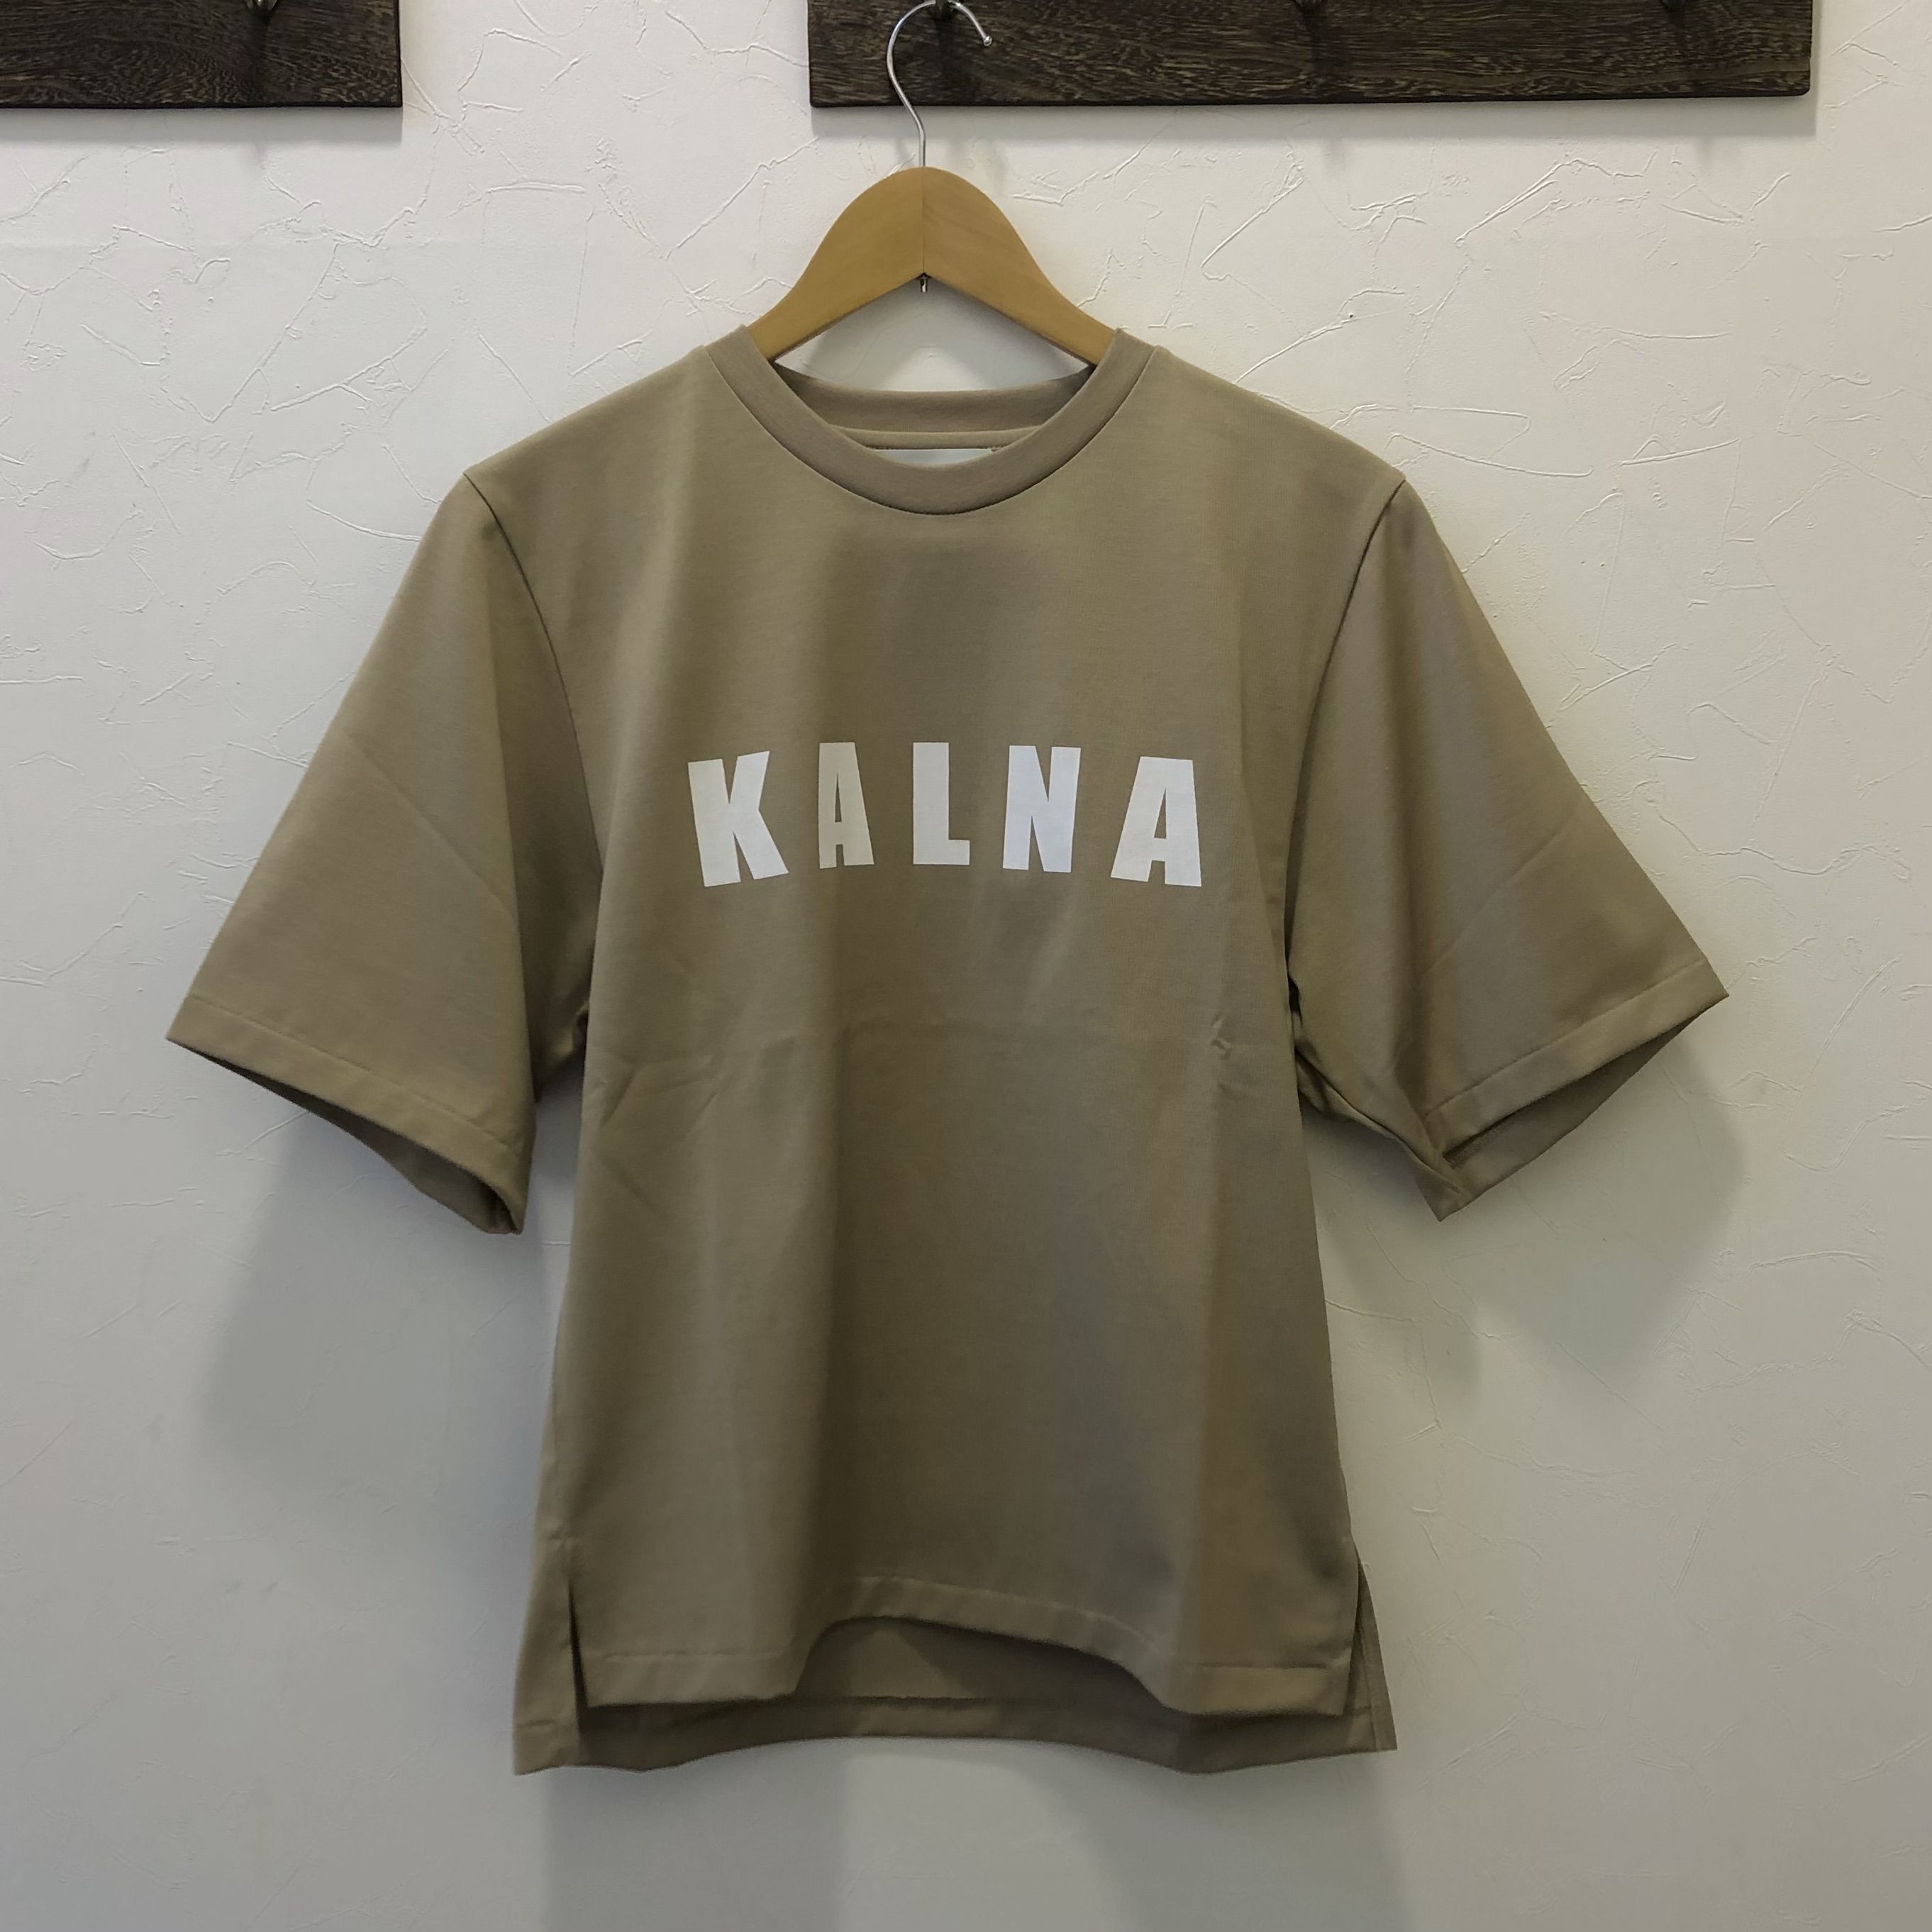 長年探し求めていたのはこれだったのか！着心地バツグンのKALNAのTシャツ。